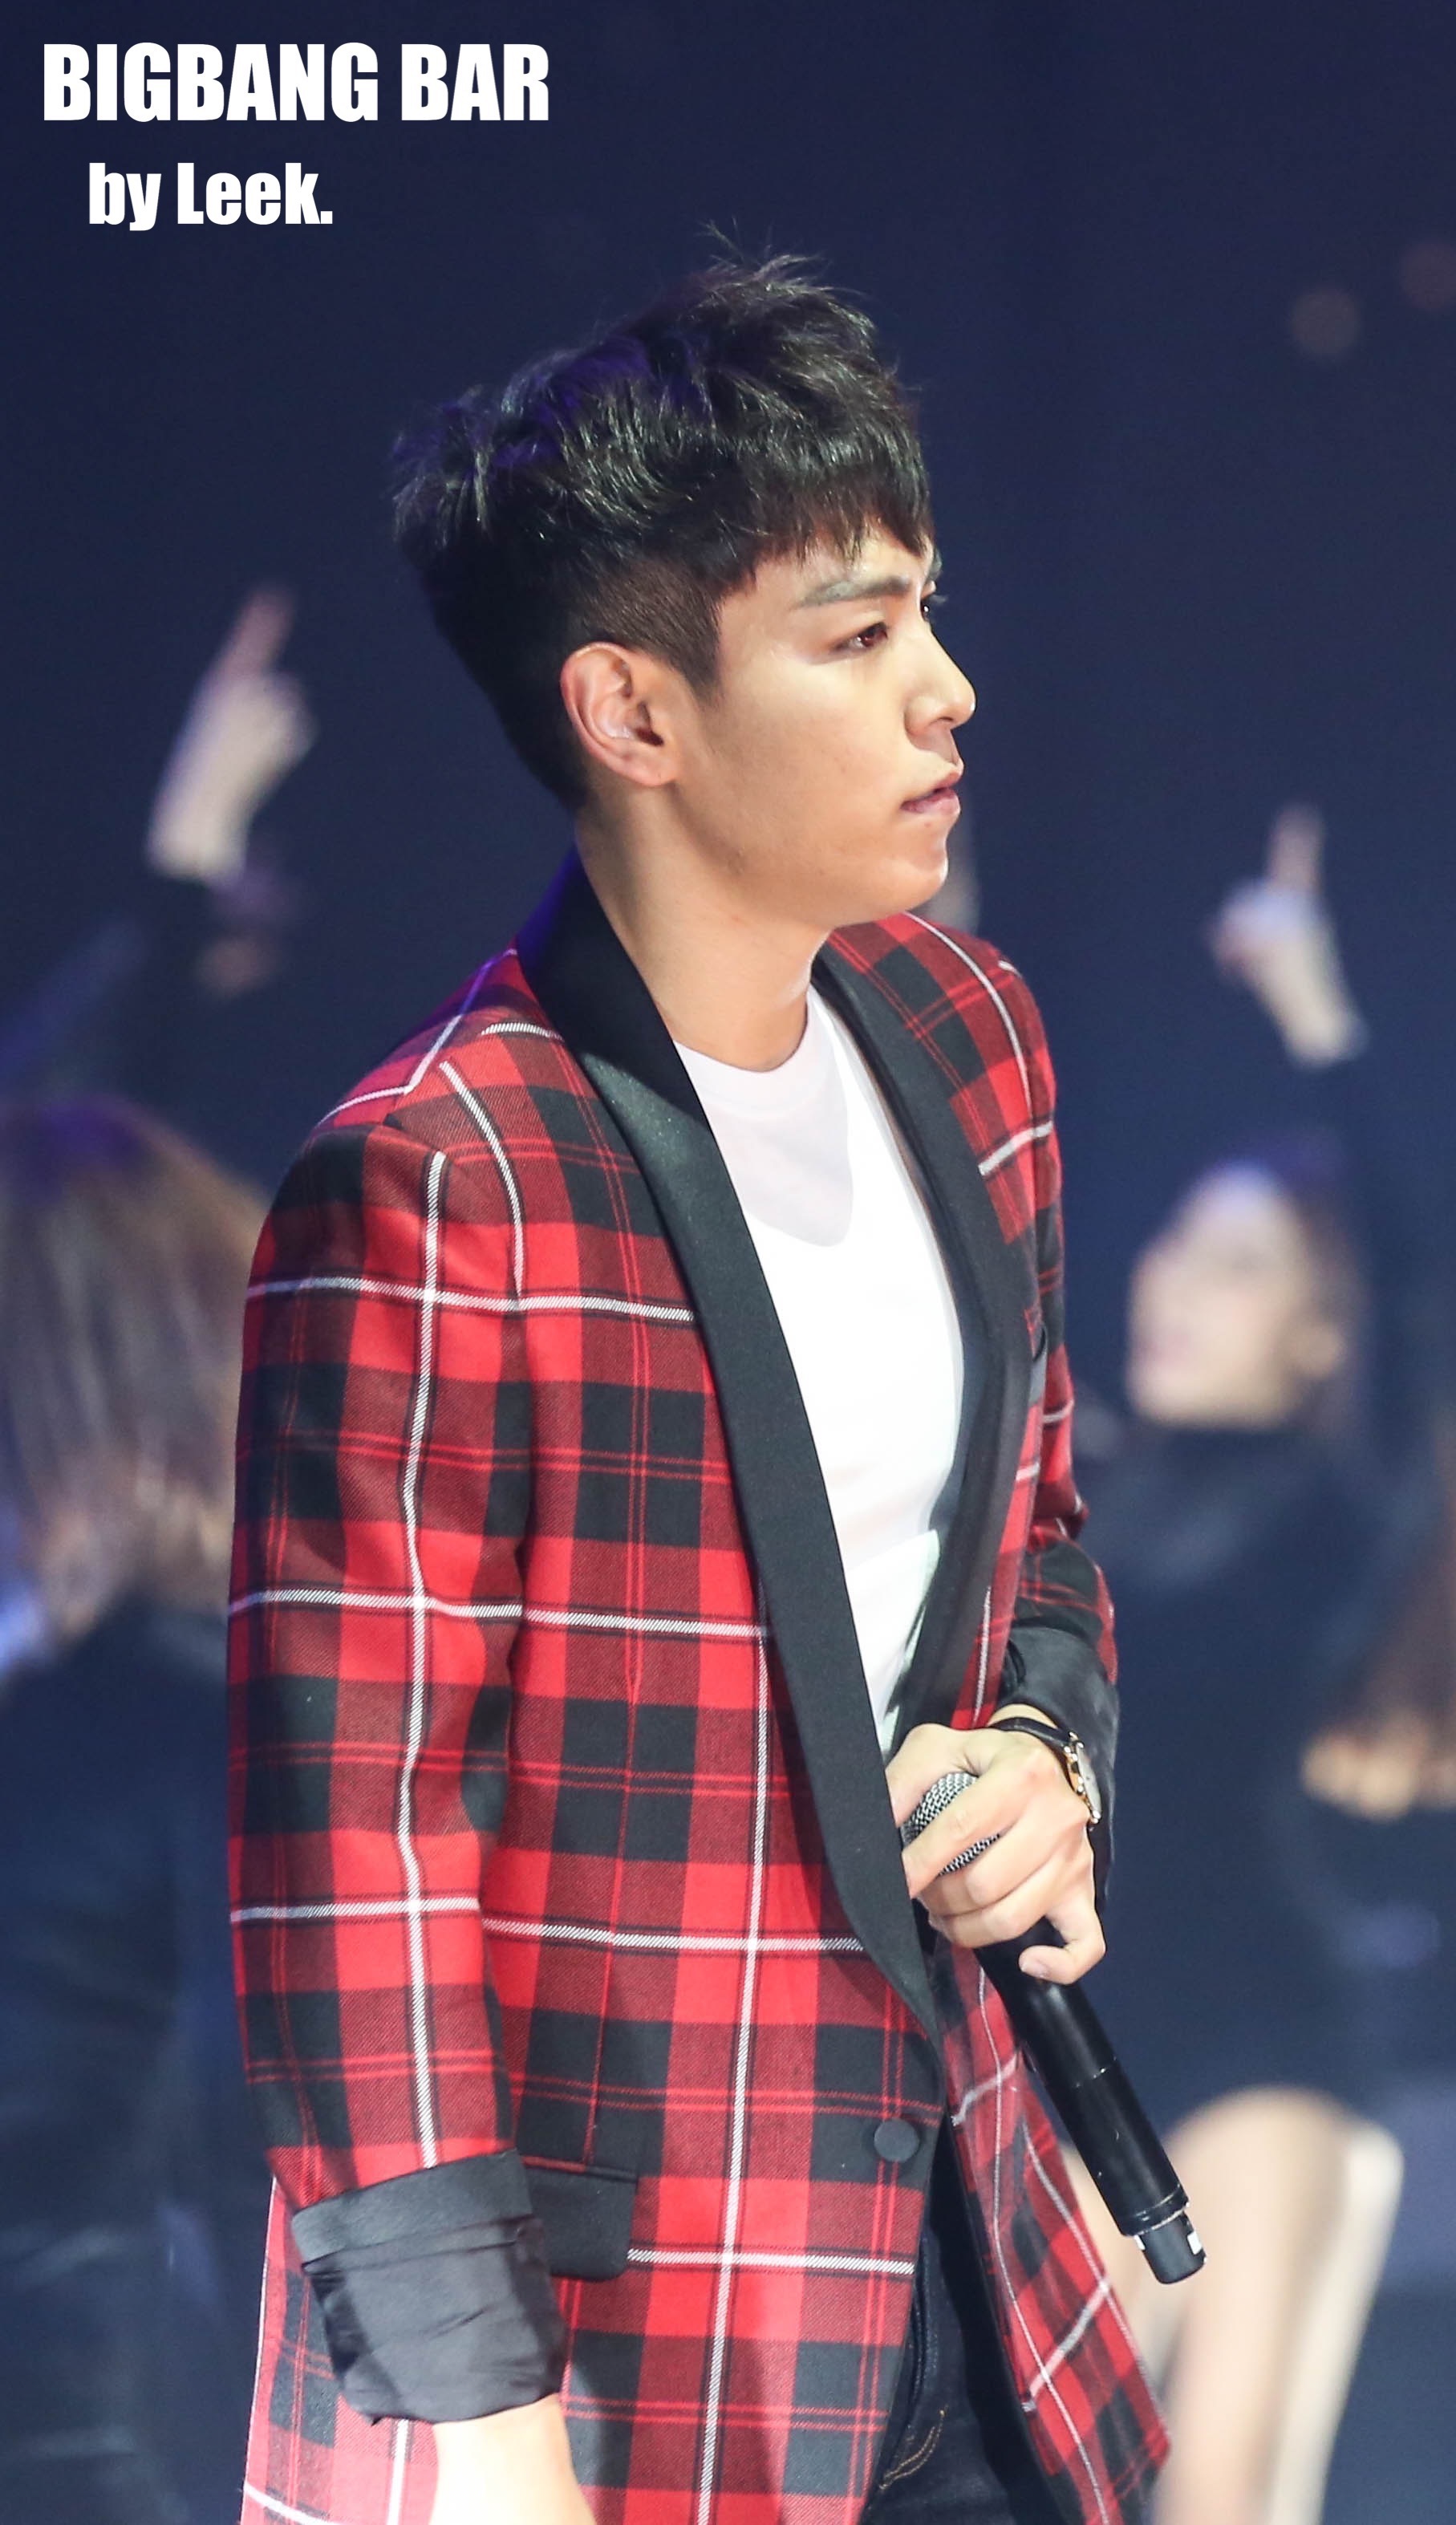 BIGBANG VIPevent Beijing 2016-01-01 By BIGBANGBar By Leek (50)